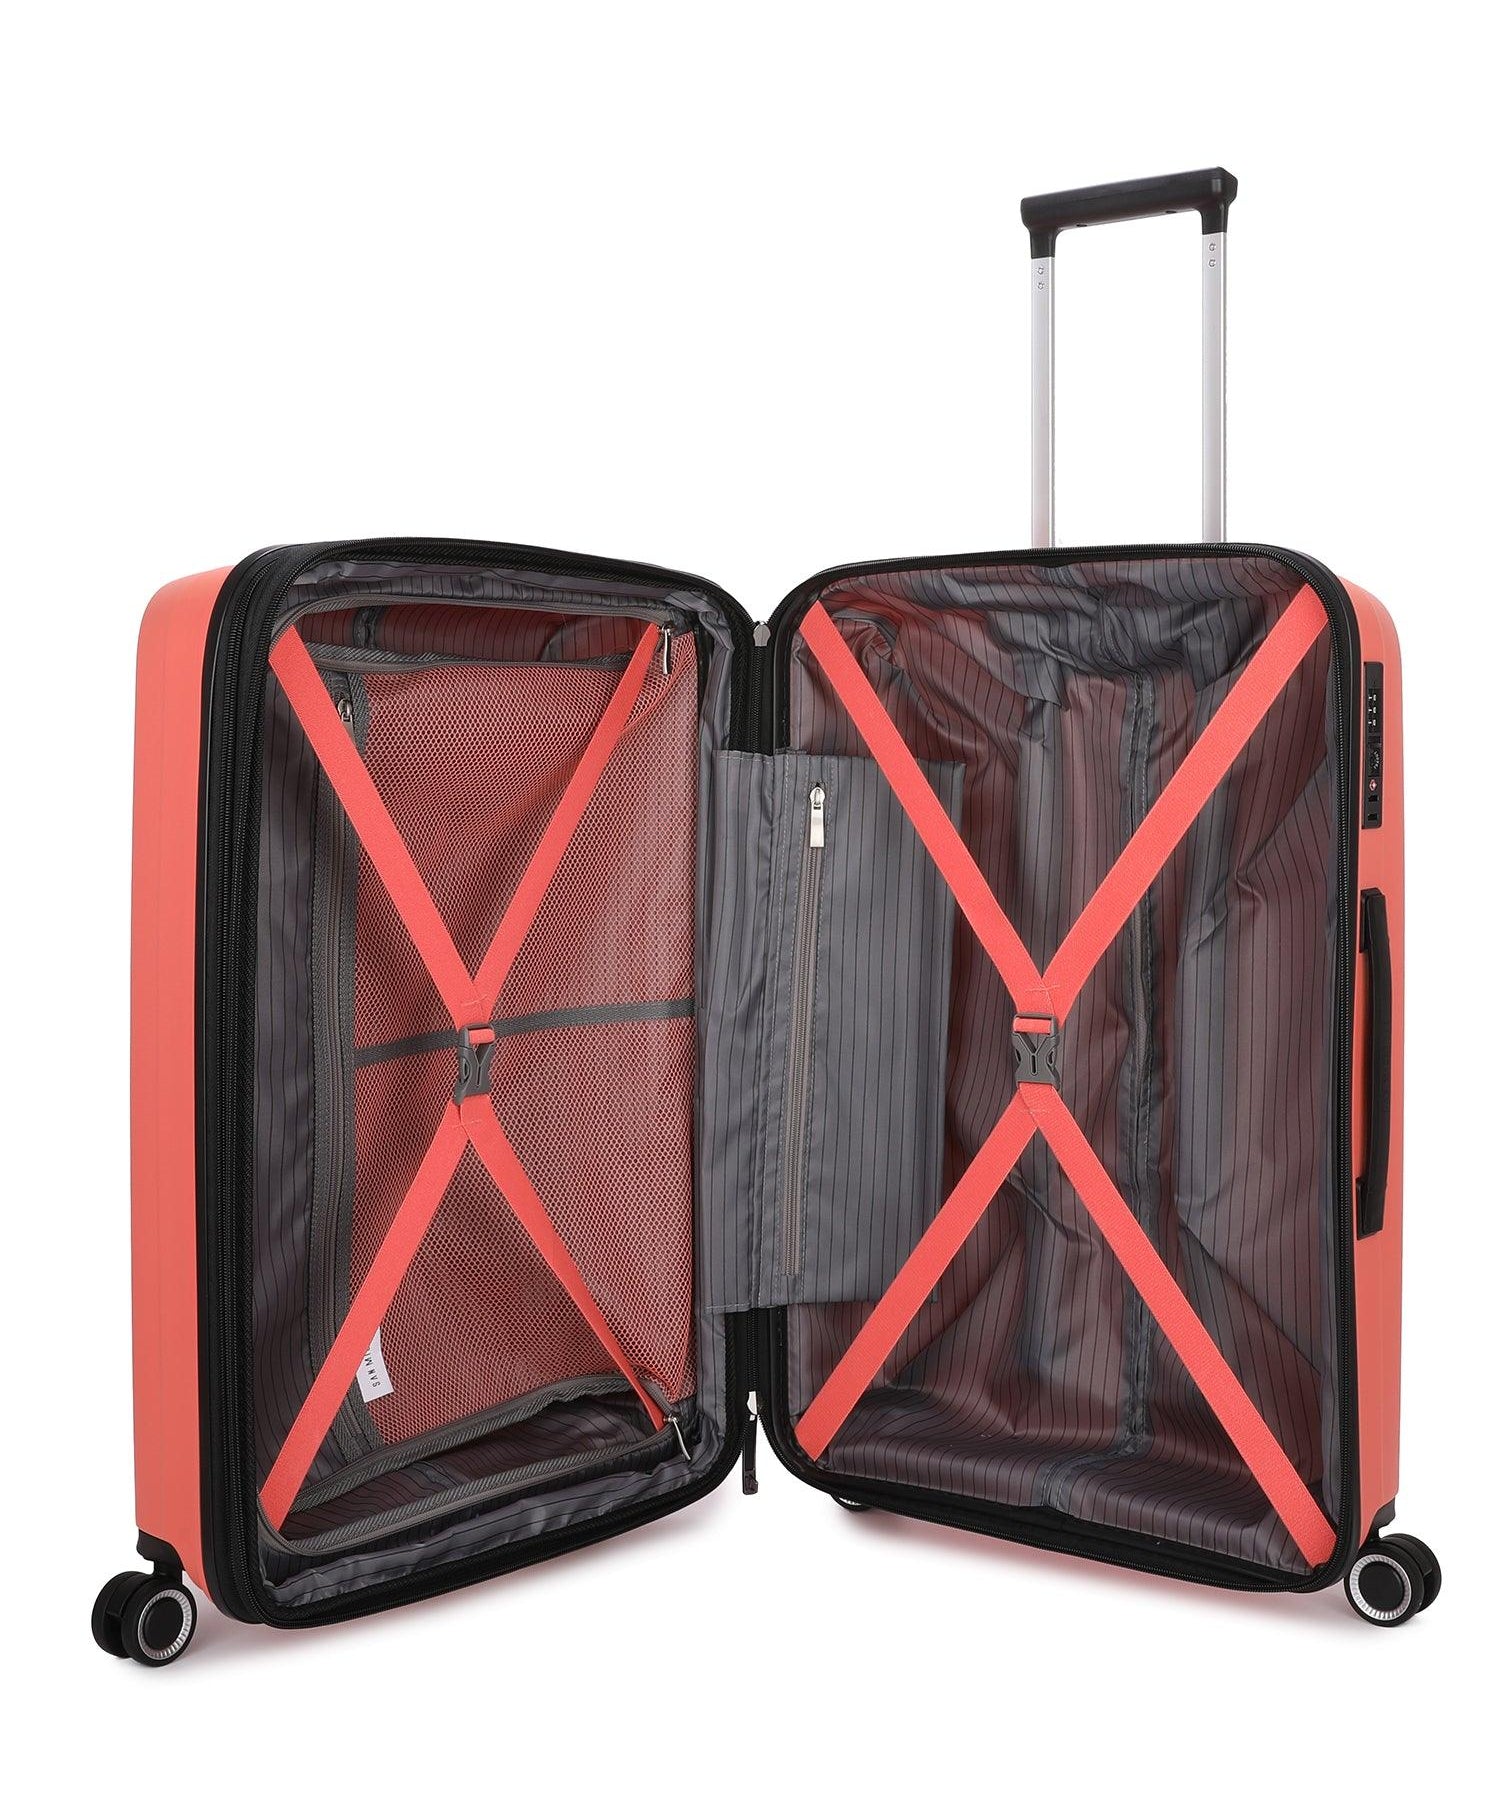 San Michelle Light Traveller 66cm Suitcase - Peach - San Michelle Bags suitcase nz